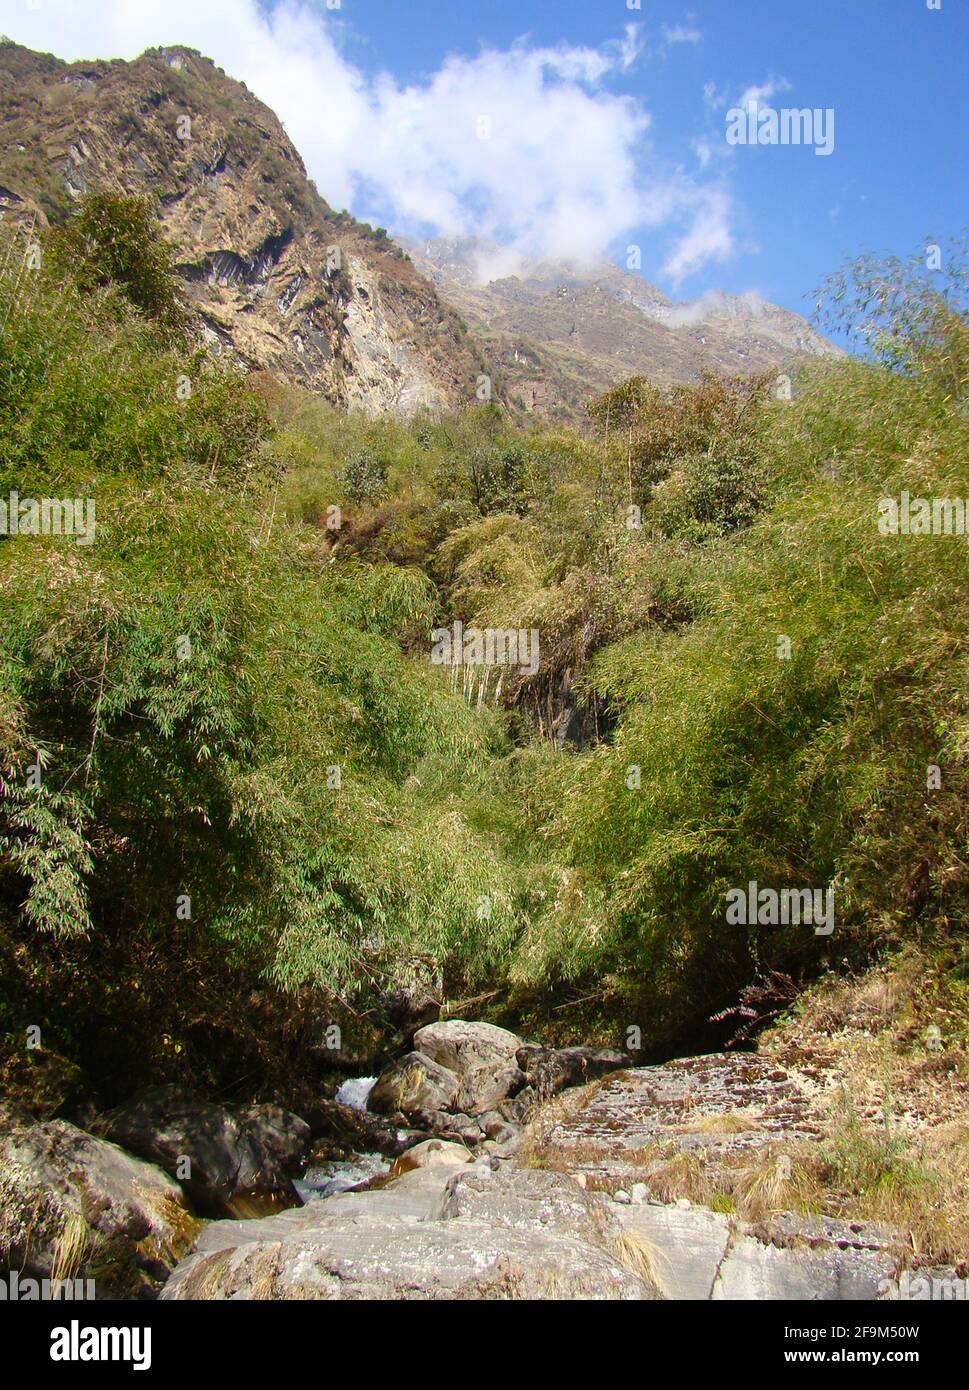 Foreste di montagna temperate miste (foreste miste dell'Himalaya) ai piedi della catena montuosa dell'Annapurna, Nepal Foto Stock